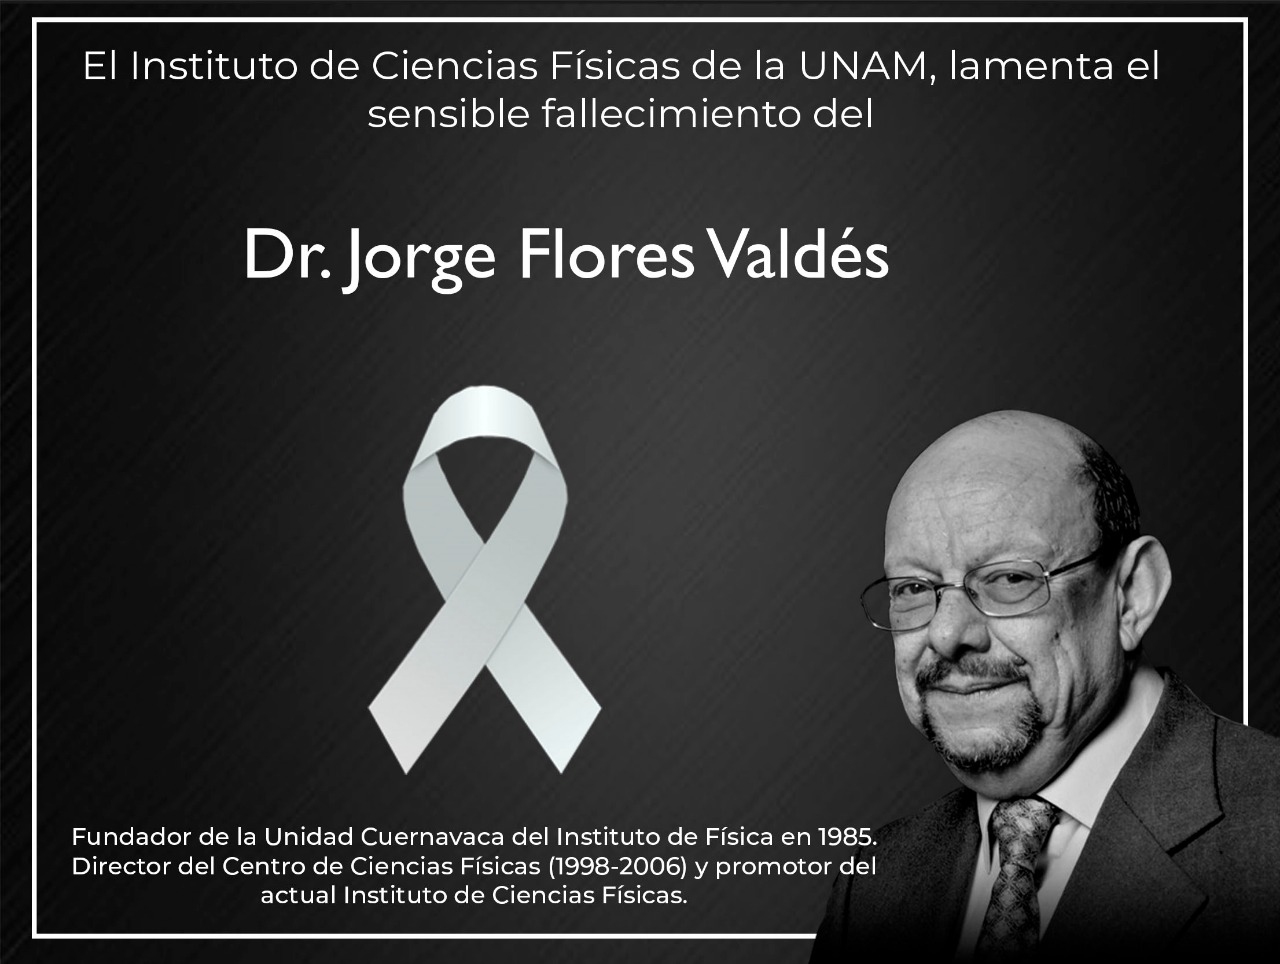 Dr. Jorge Flores Valdés Descanse en paz.